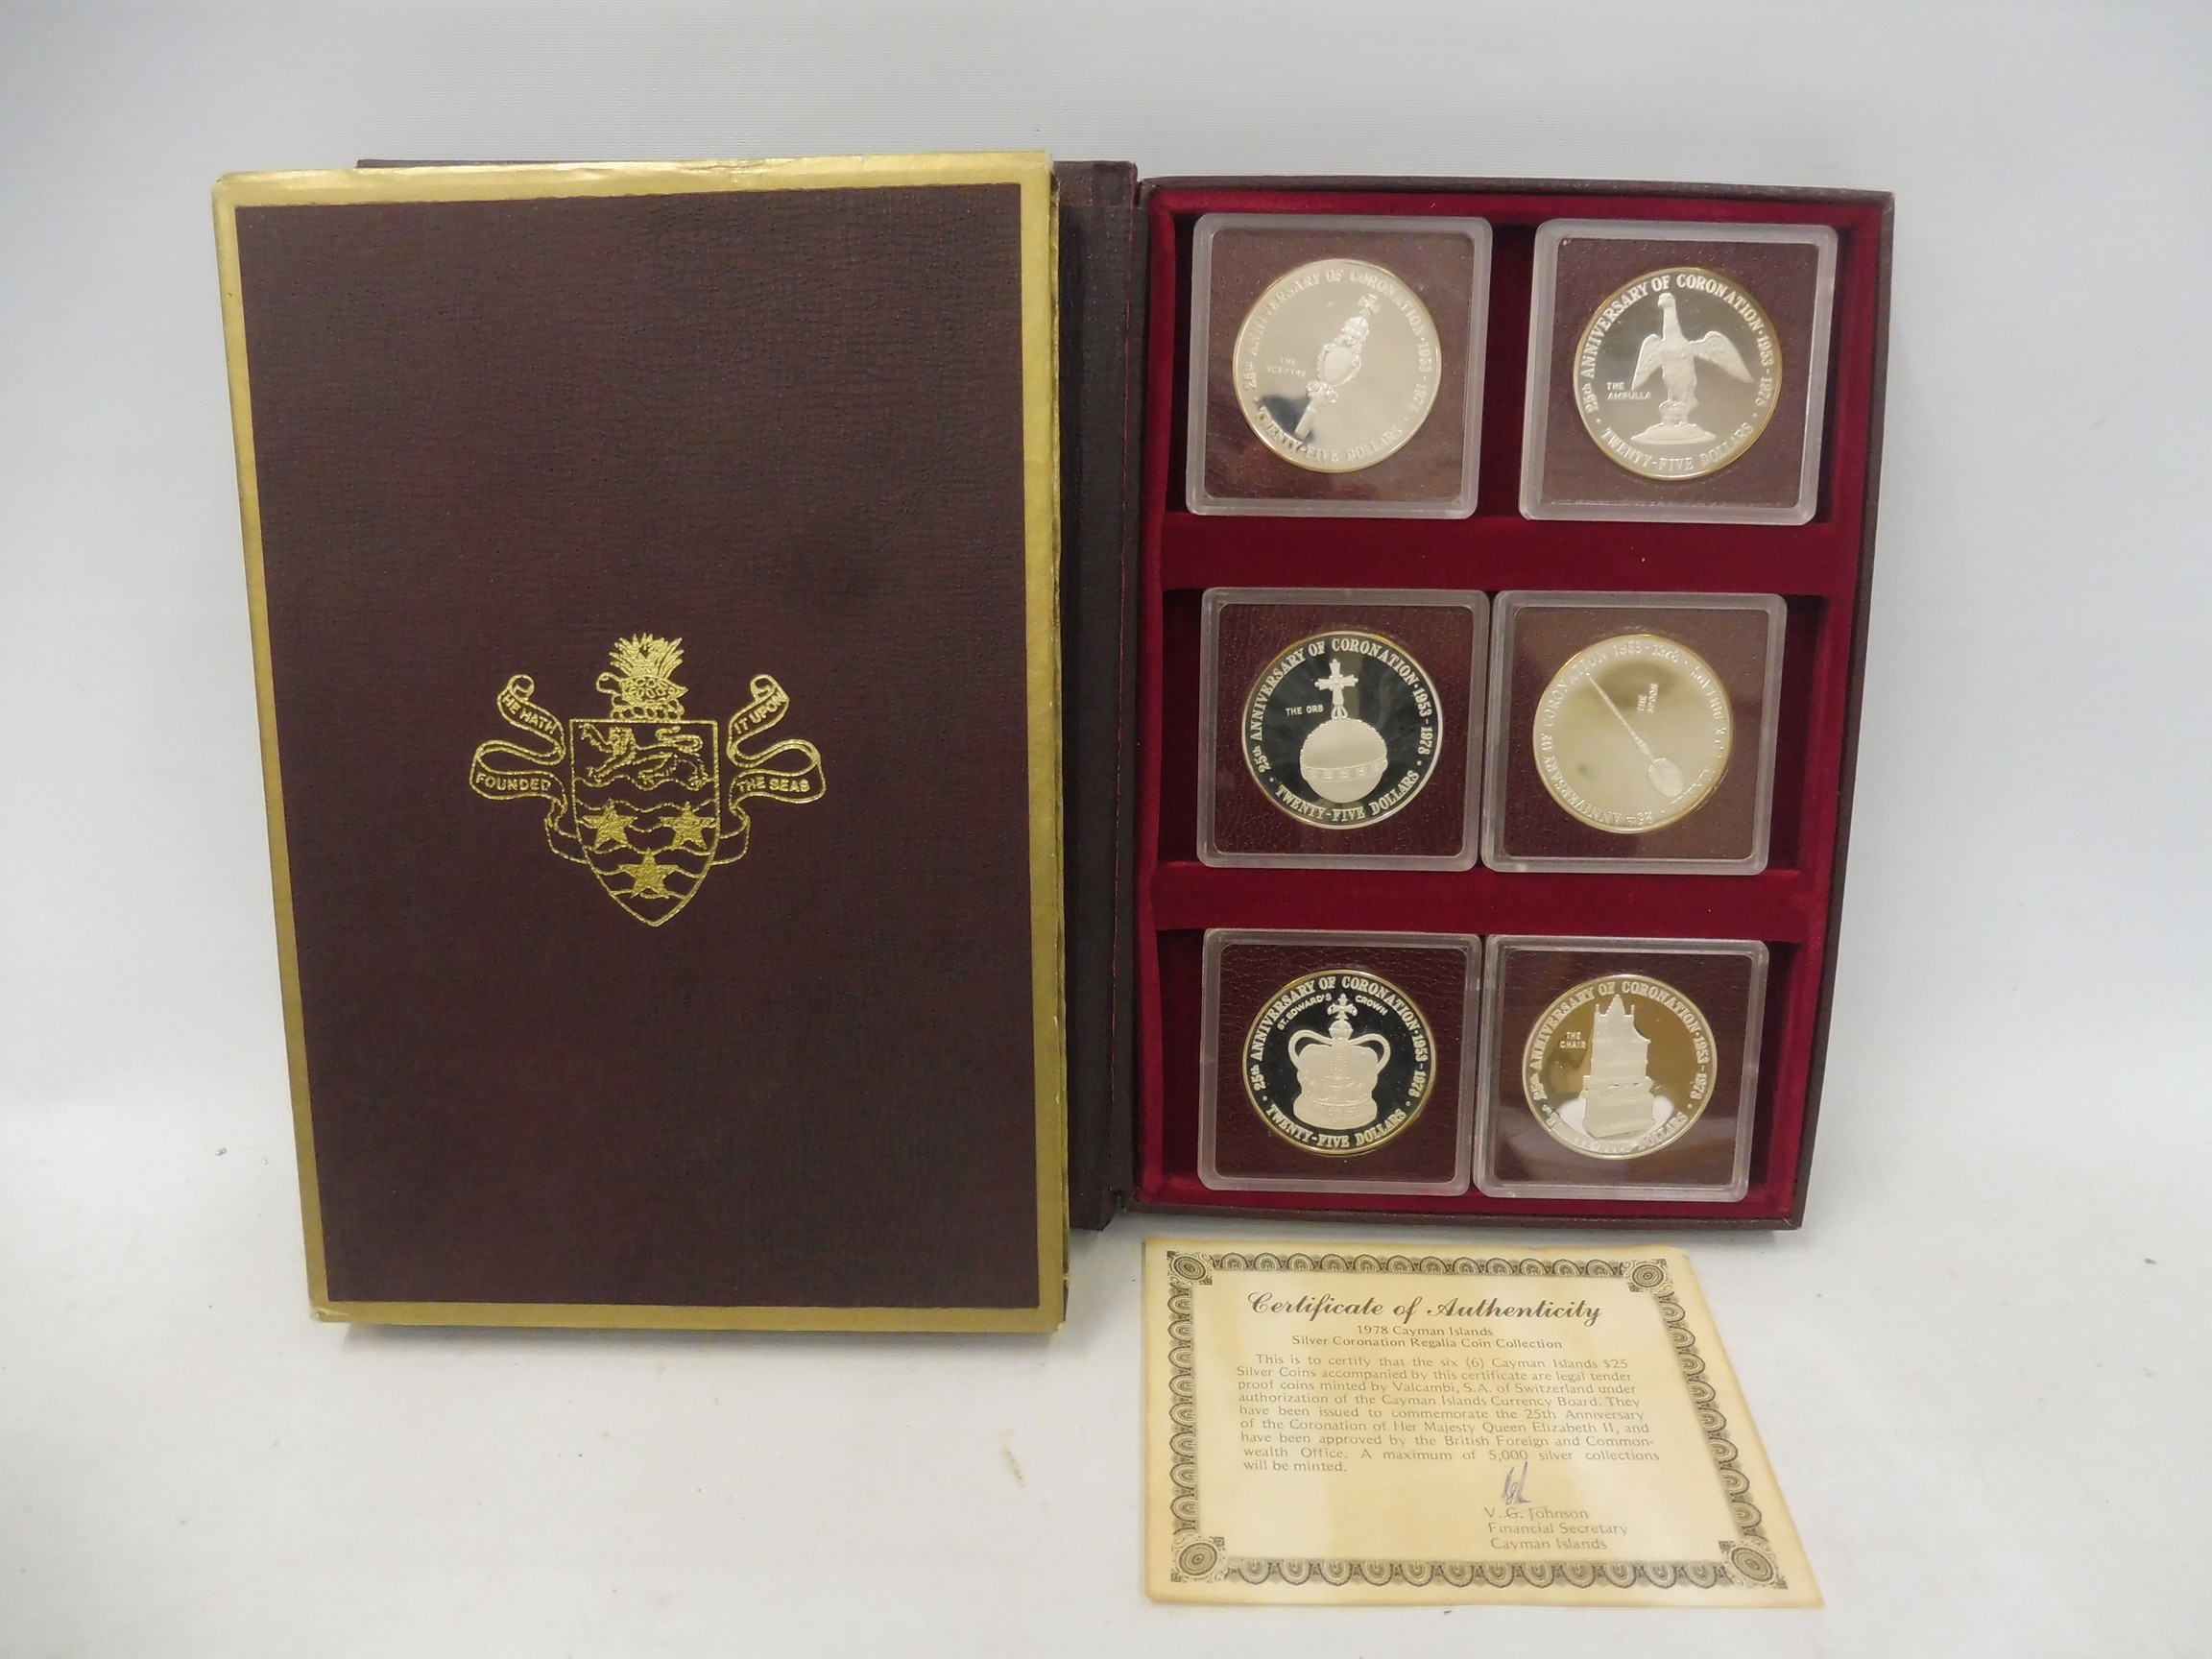 A 1978 Cayman Islands Coronation Regalia Silver Collection, comprising six 25 dollar silver coins,